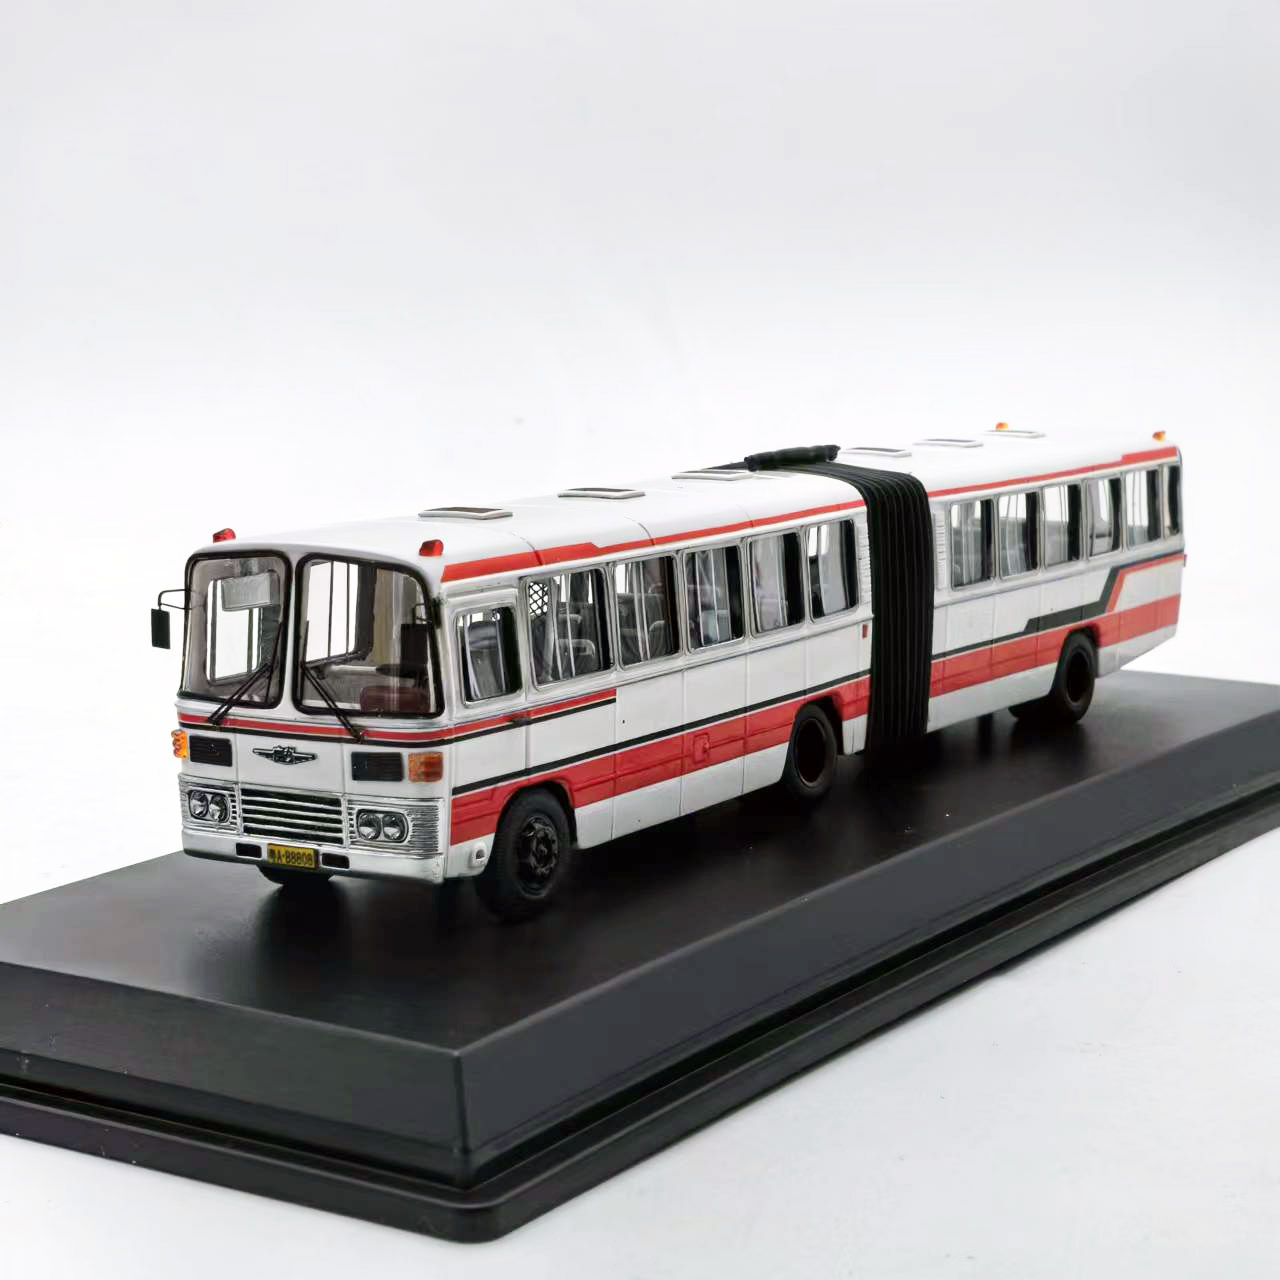 1:76广州公交车模型GZ662广汽大通道铰接车1路公共汽车巴士6142E